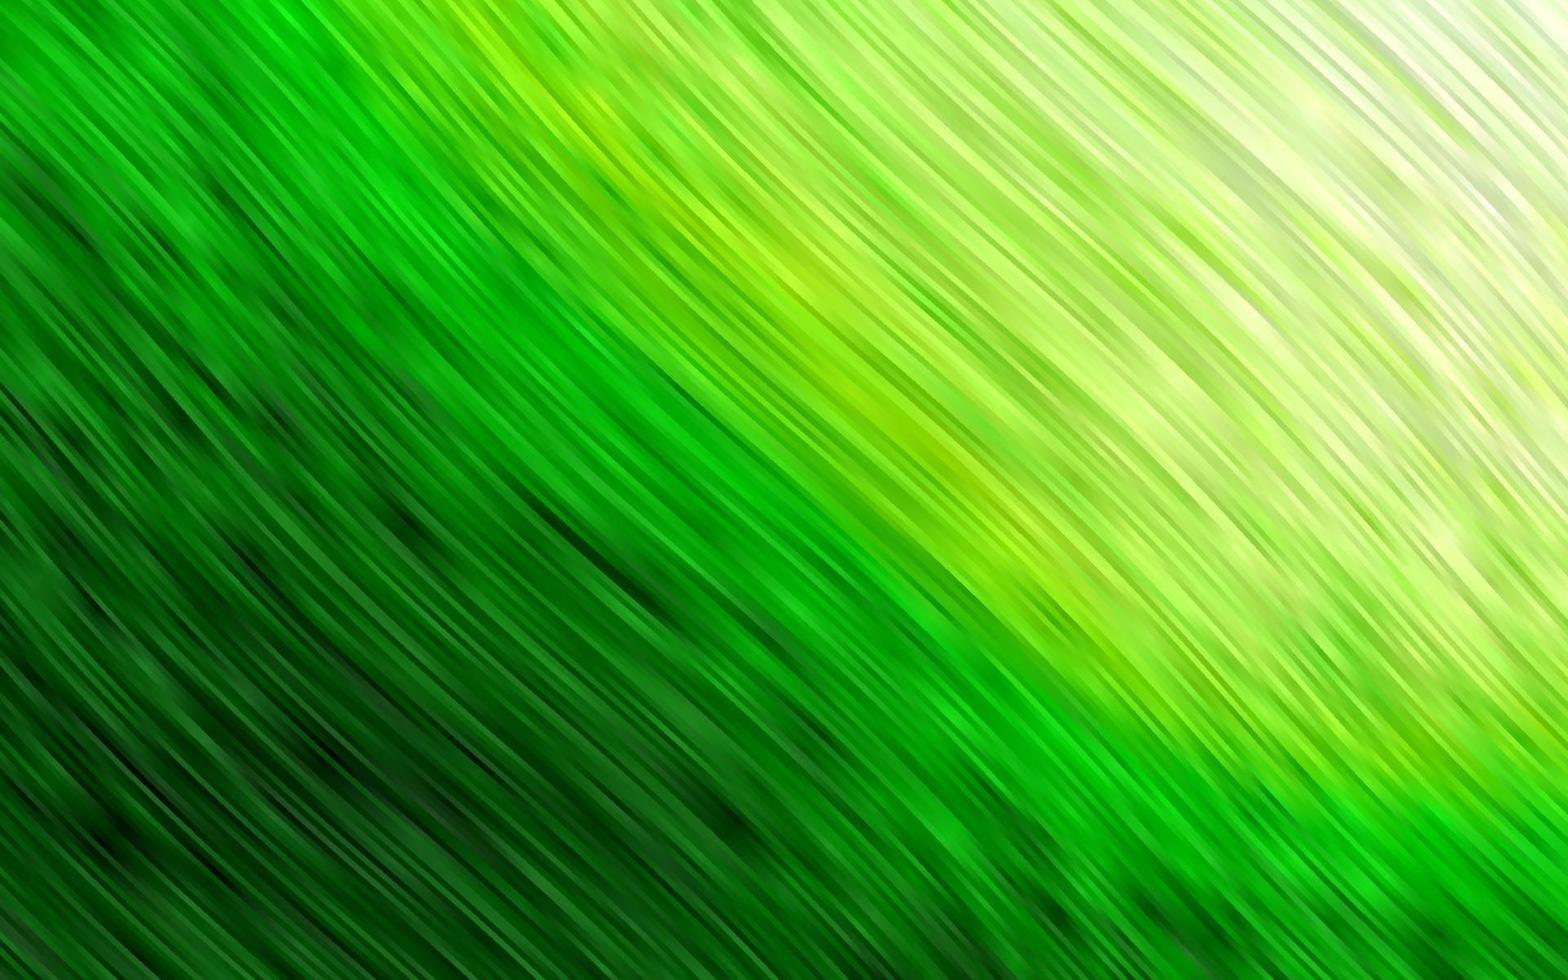 ljusgrönt vektormönster med linjer, ovaler. vektor